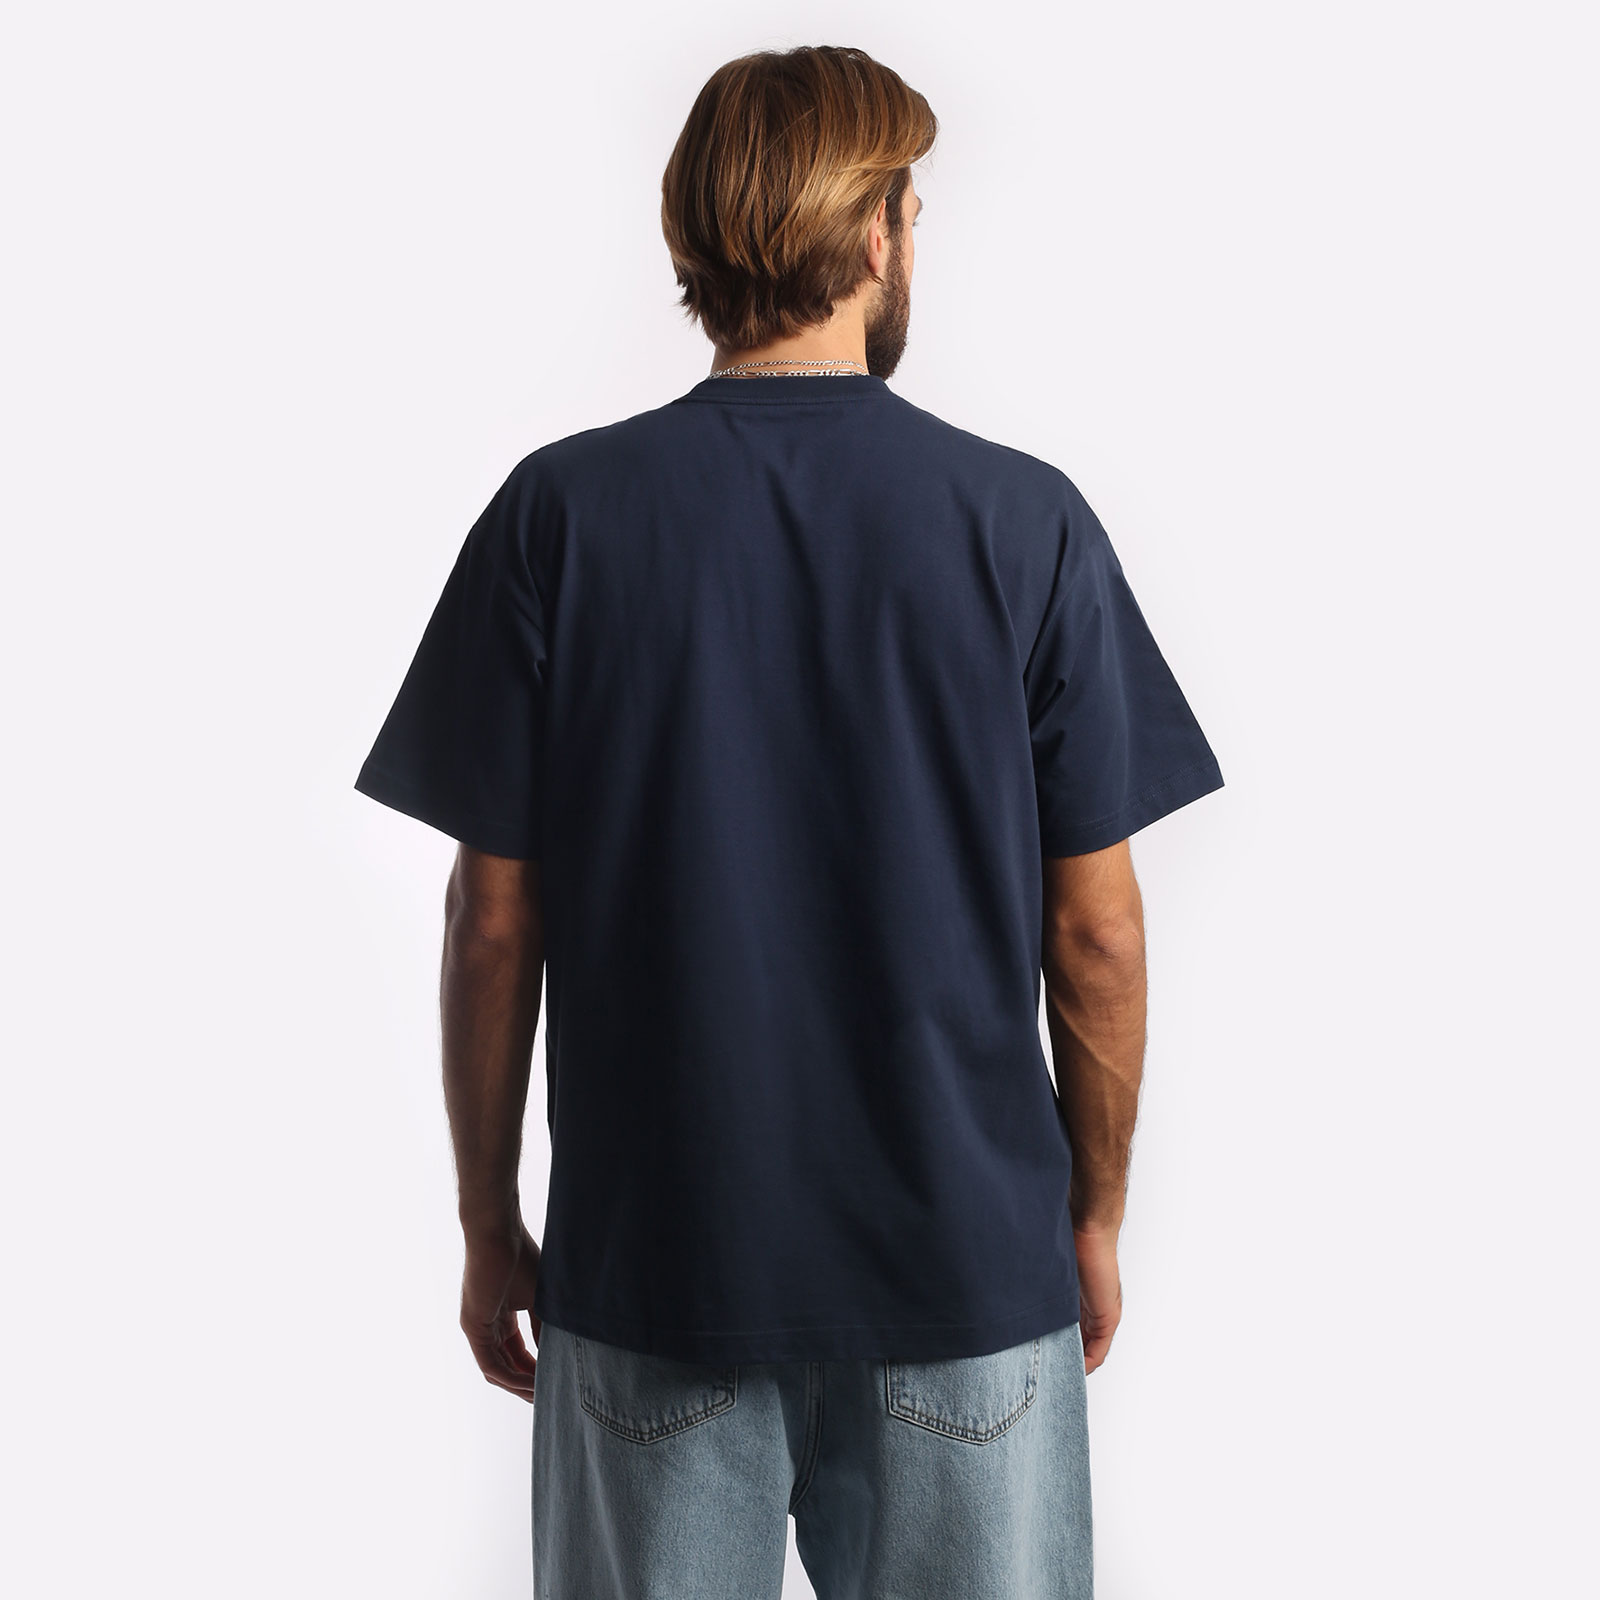 мужская синяя футболка Carhartt WIP S/S I Heart Progress T-Shirt I032378-blue - цена, описание, фото 2